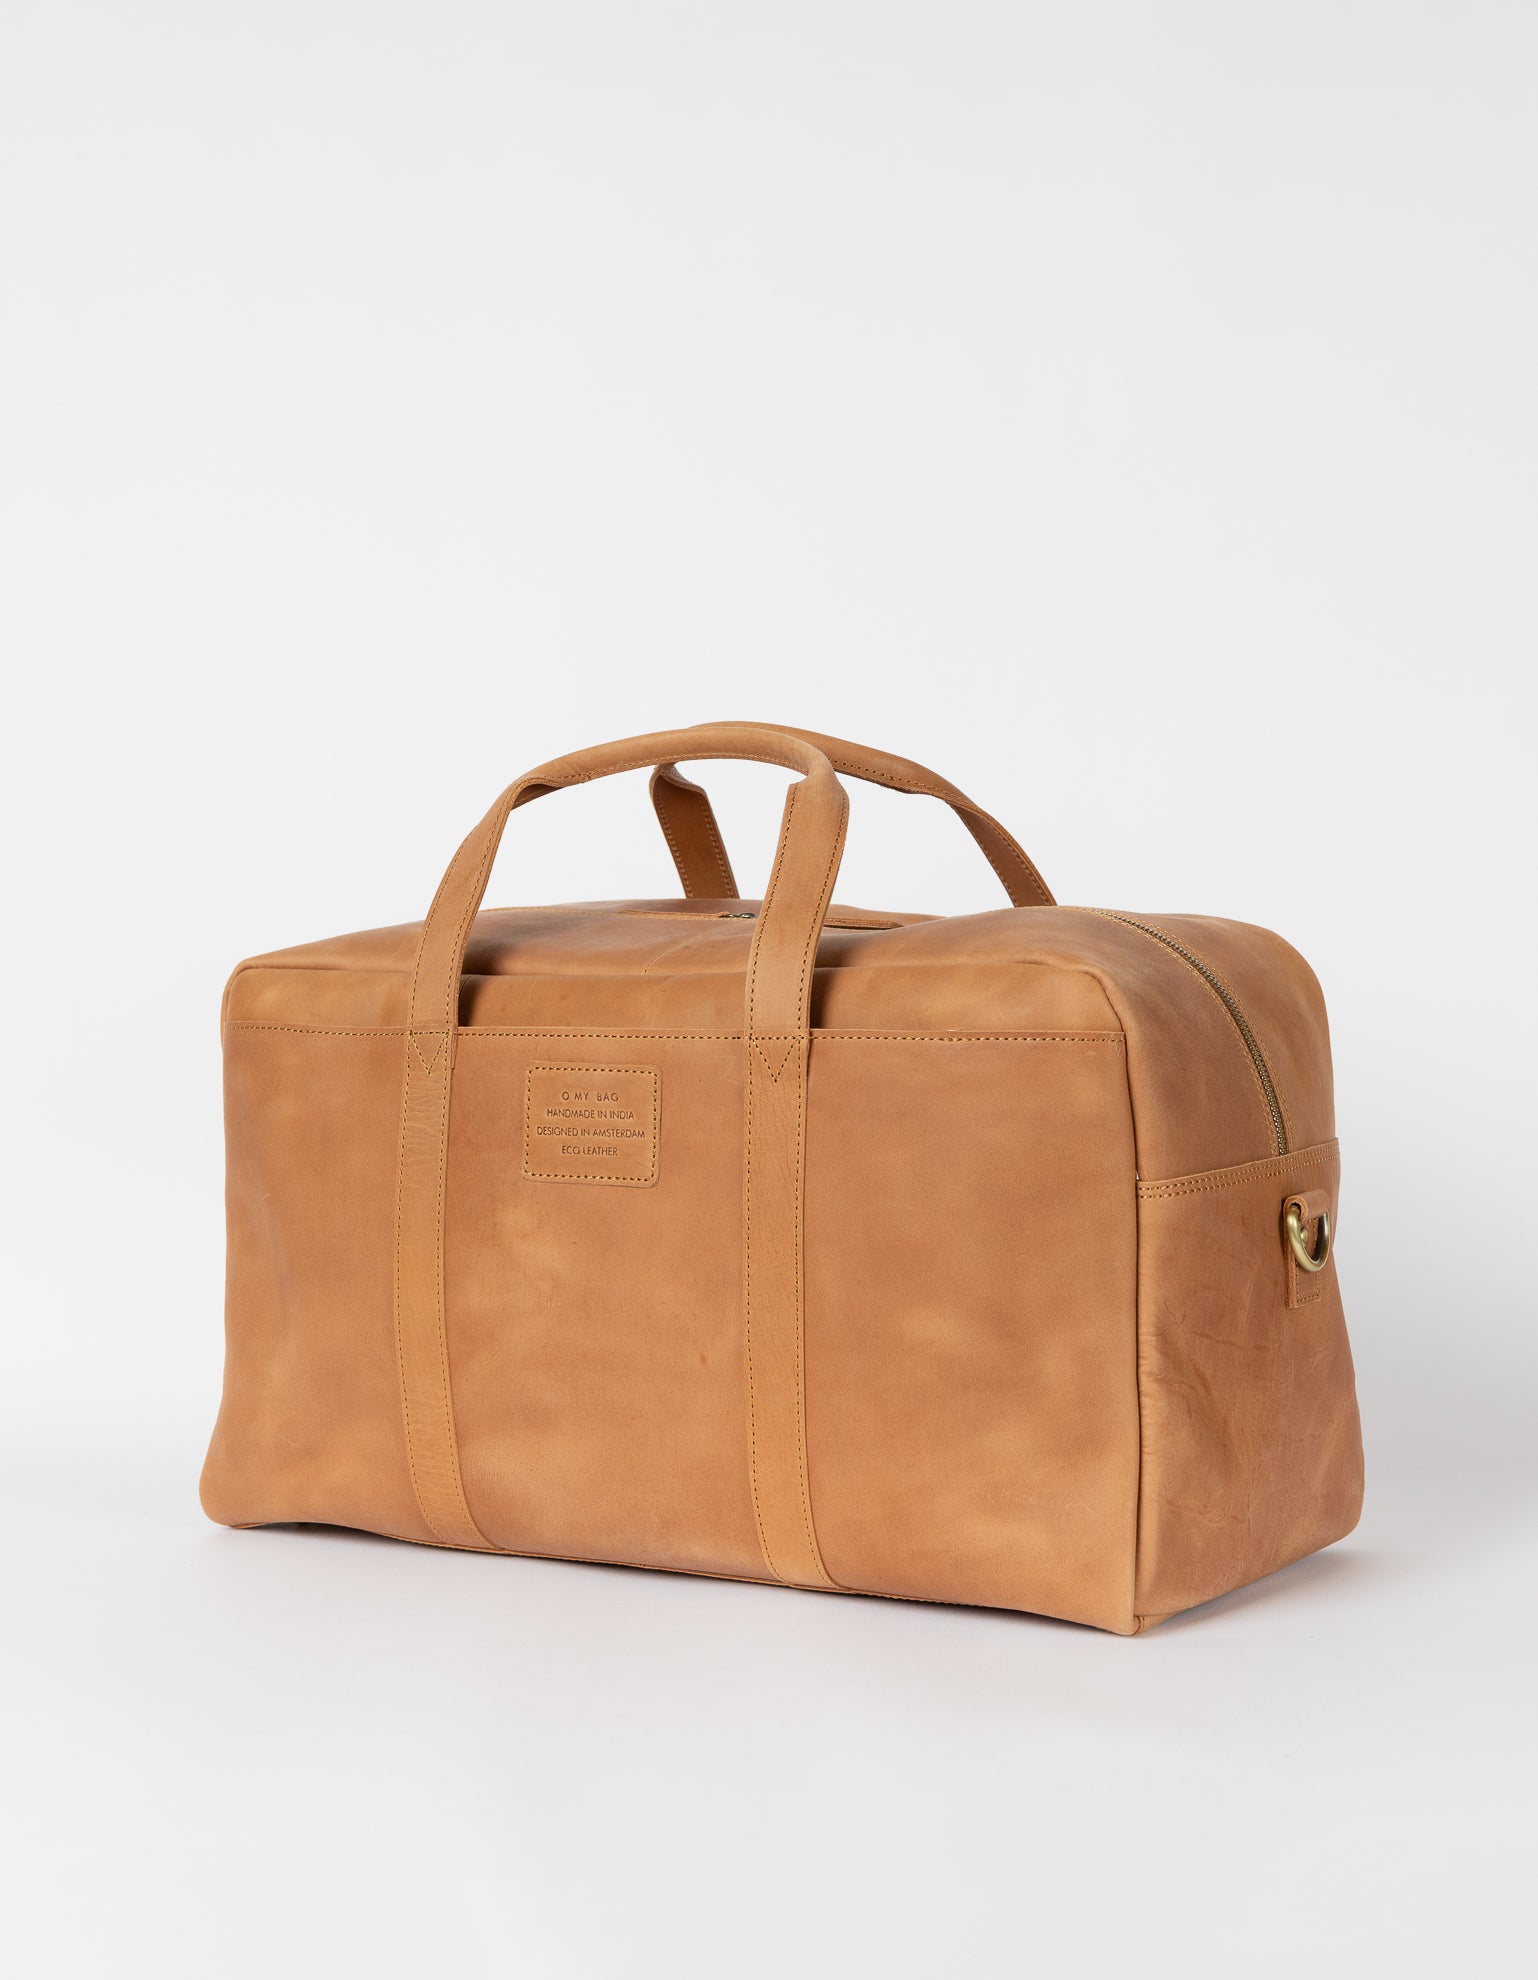 Otis Weekender Camel Hunter Leather. Large travel bag for men. Side product image.